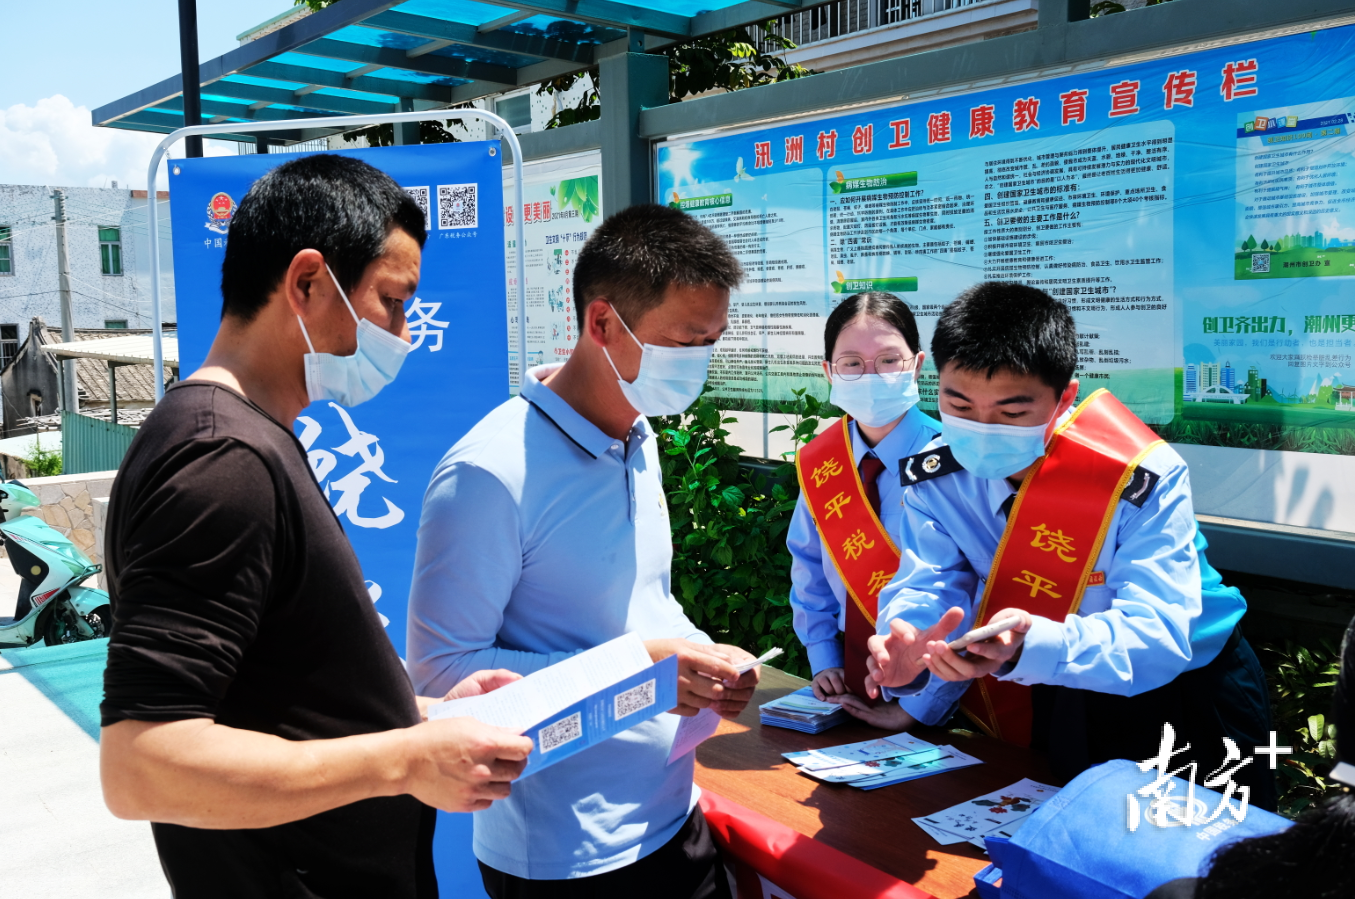 饶平县税务局饶税青年党员向群众派发宣传资料。受访者供图